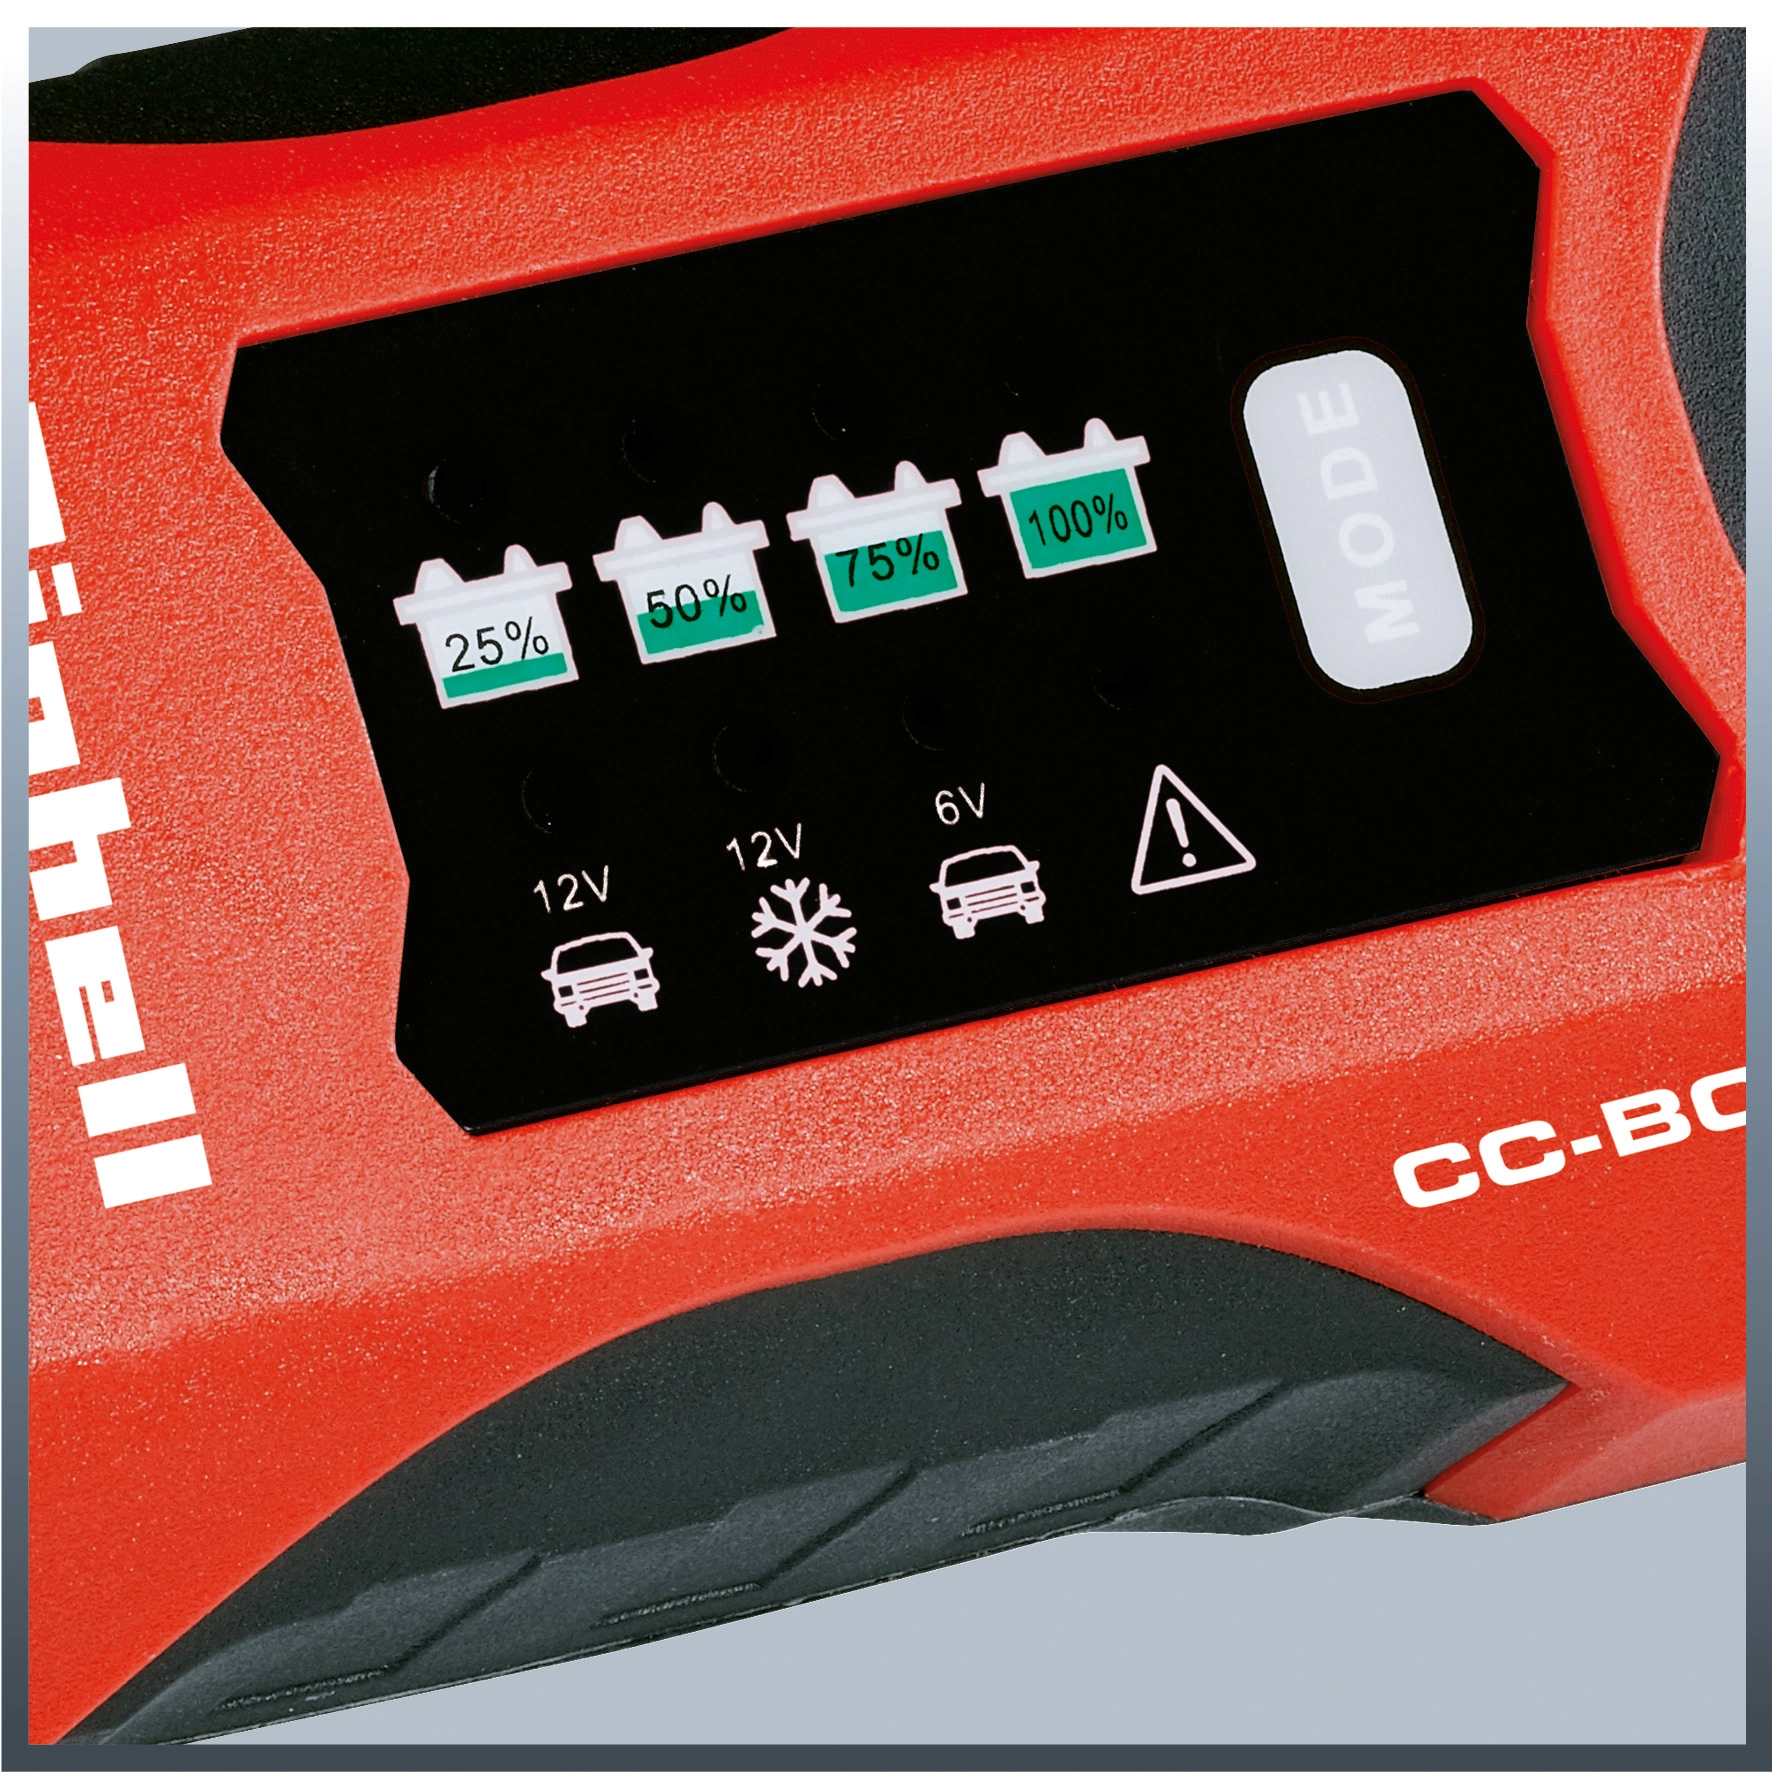 Einhell Batterie-Ladegerät CC-BC 2 M kaufen bei OBI